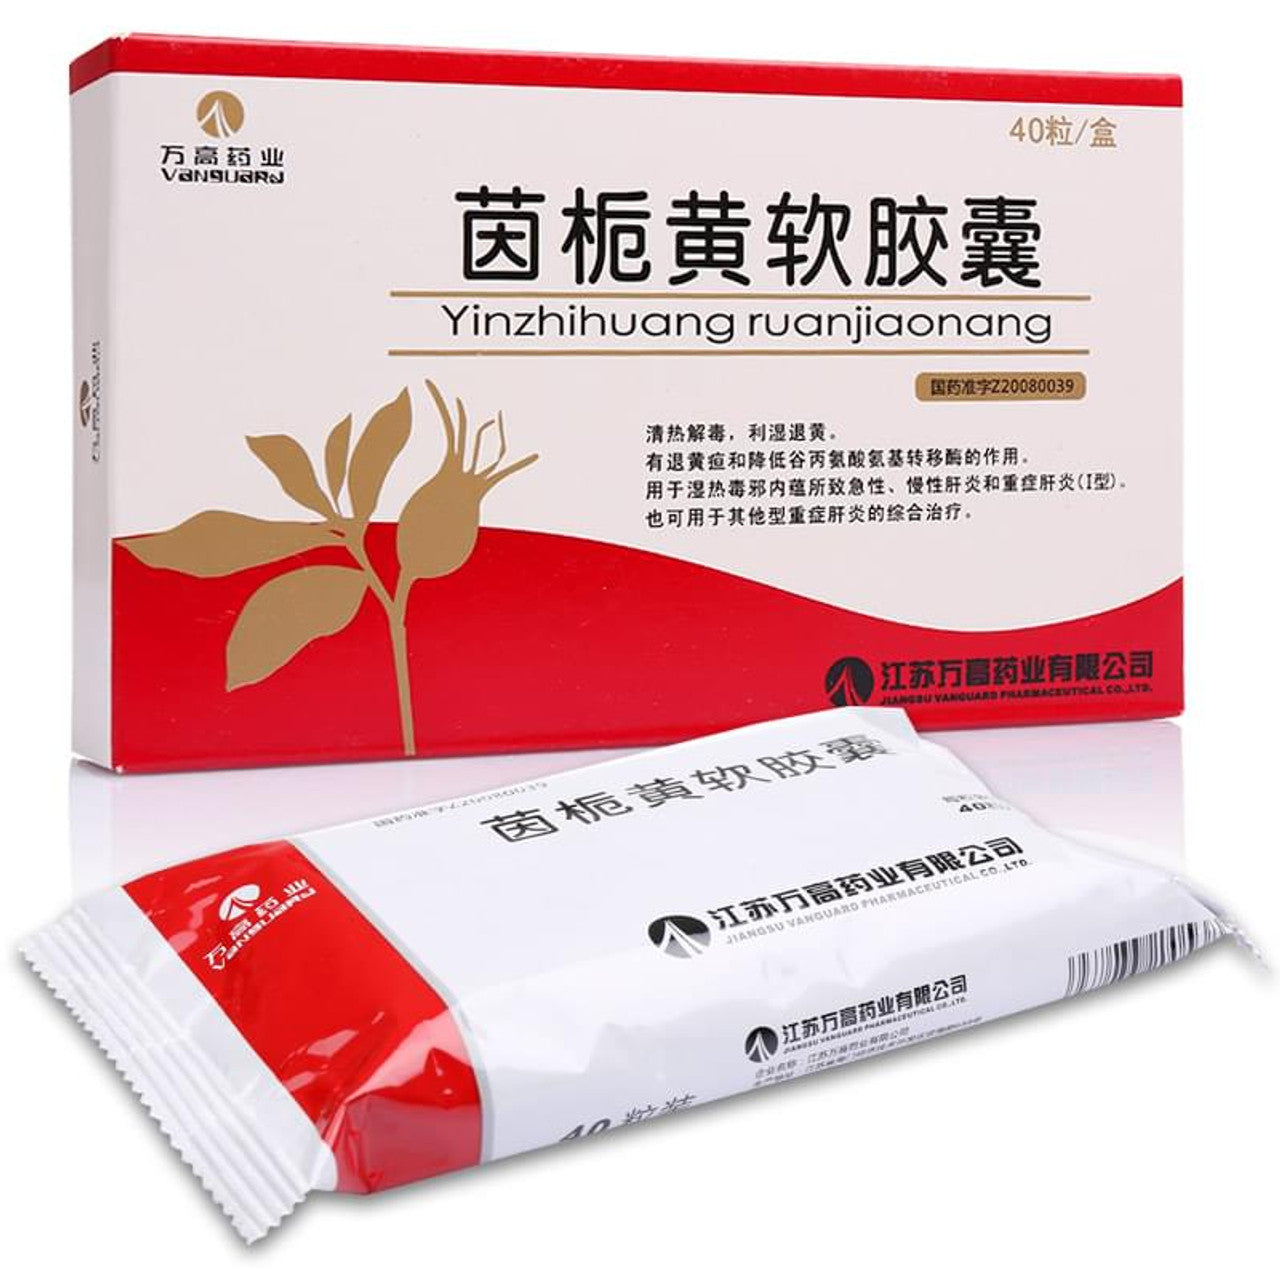 China Herb. Brand Wangaoyaoye. Yinzhihuang Ruanjiaonang or Yinzhihuangruanjiaonang or Yin Zhi Huang Ruan Jiao Nang or Yinzhihuang Soft Capsules or Yin Zhi Huang Soft Capsules for hepatitis.